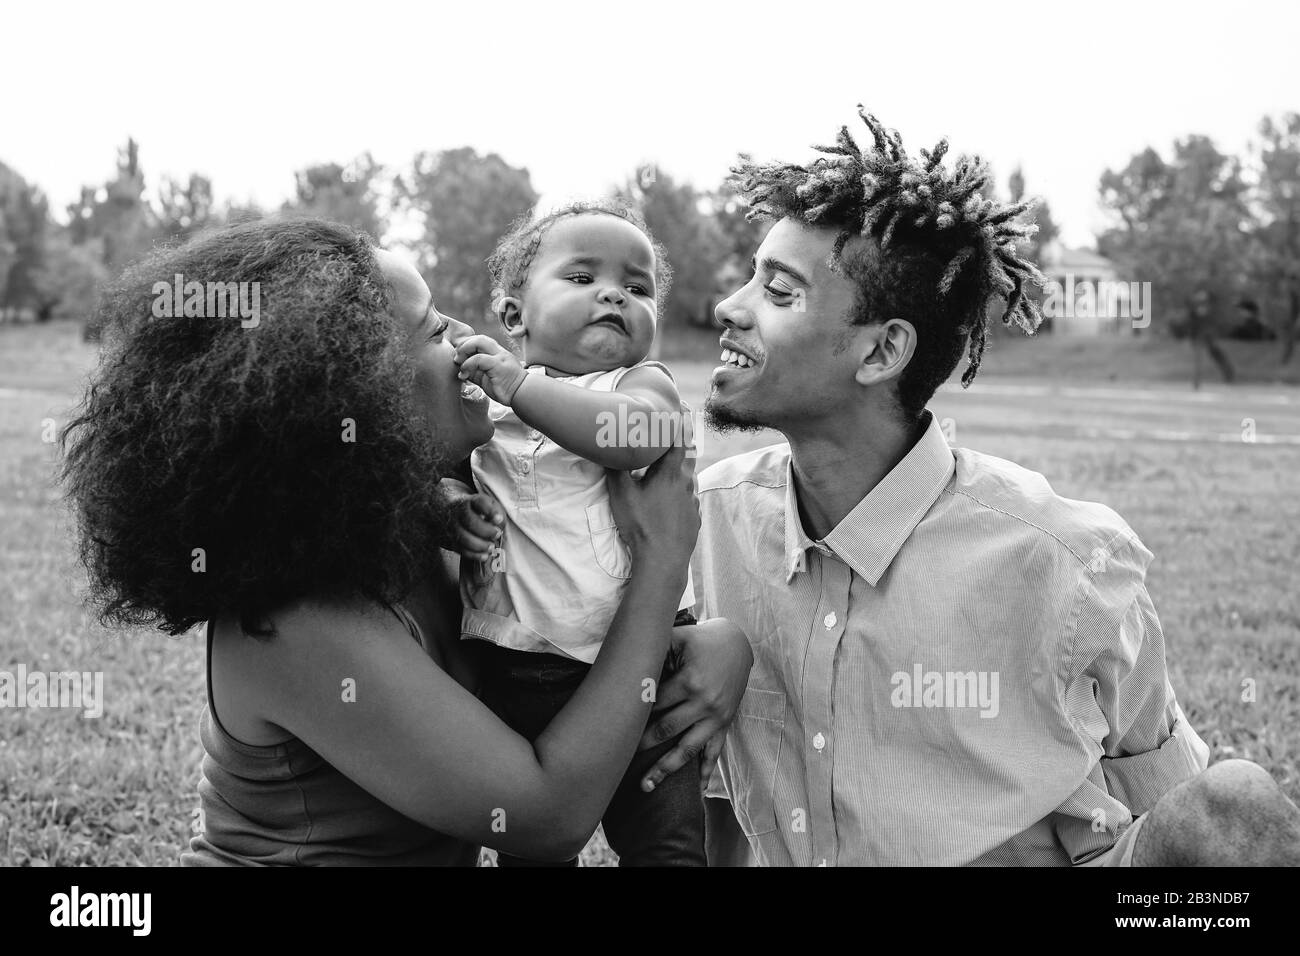 Glückliche afrikanische Familie genießt einen zärtlichen Moment am Wochenende im Freien - Mutter und Vater haben Spaß mit ihrer Tochter in einem öffentlichen Park Stockfoto